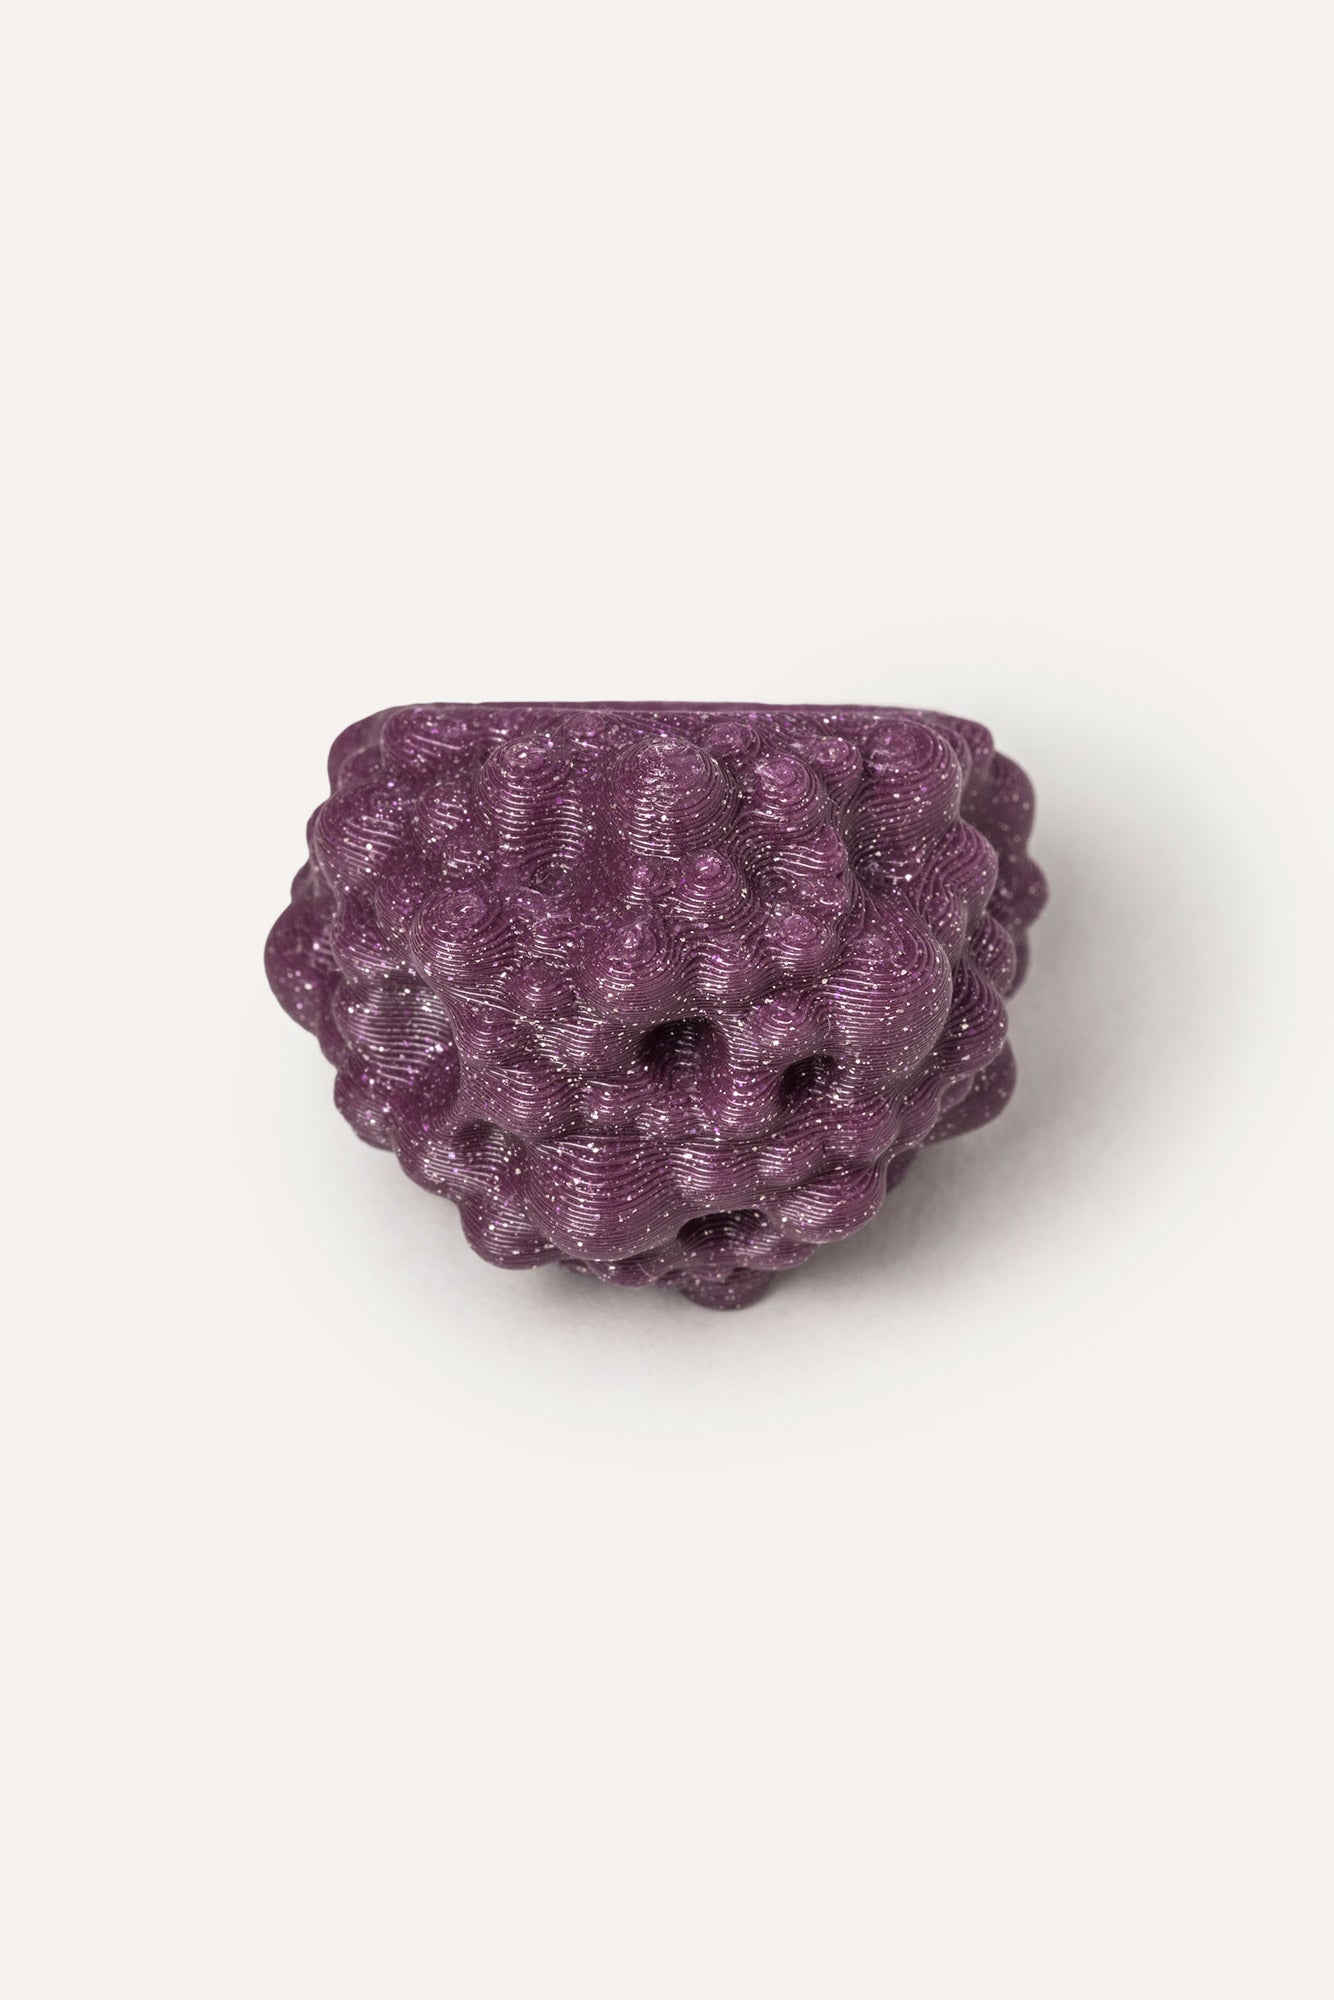 purple organic sea vegan ring 3d printed 